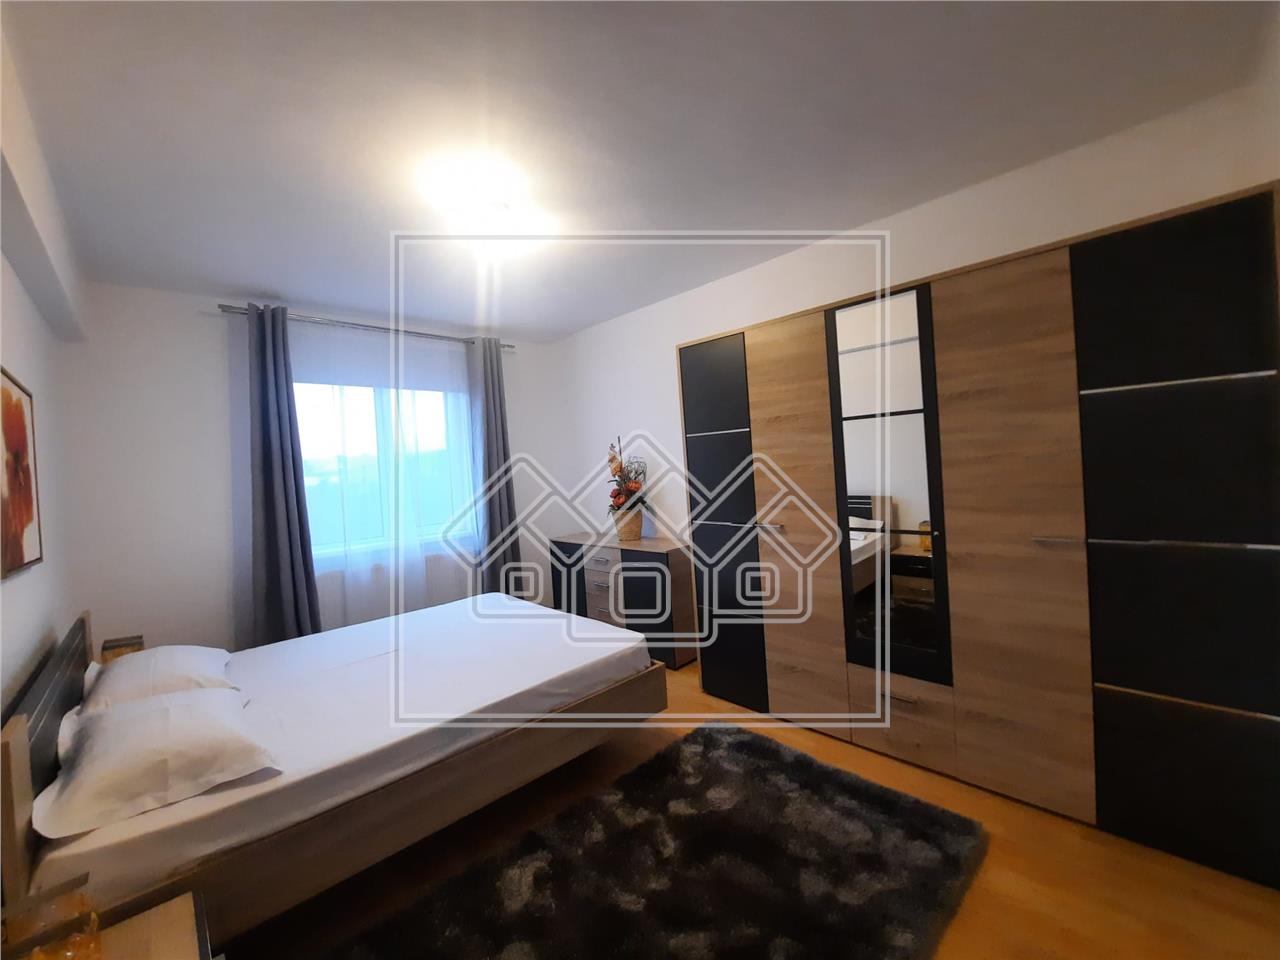 Wohnung zu vermieten mit 3 Zimmern in Alba Iulia - Cetate Area